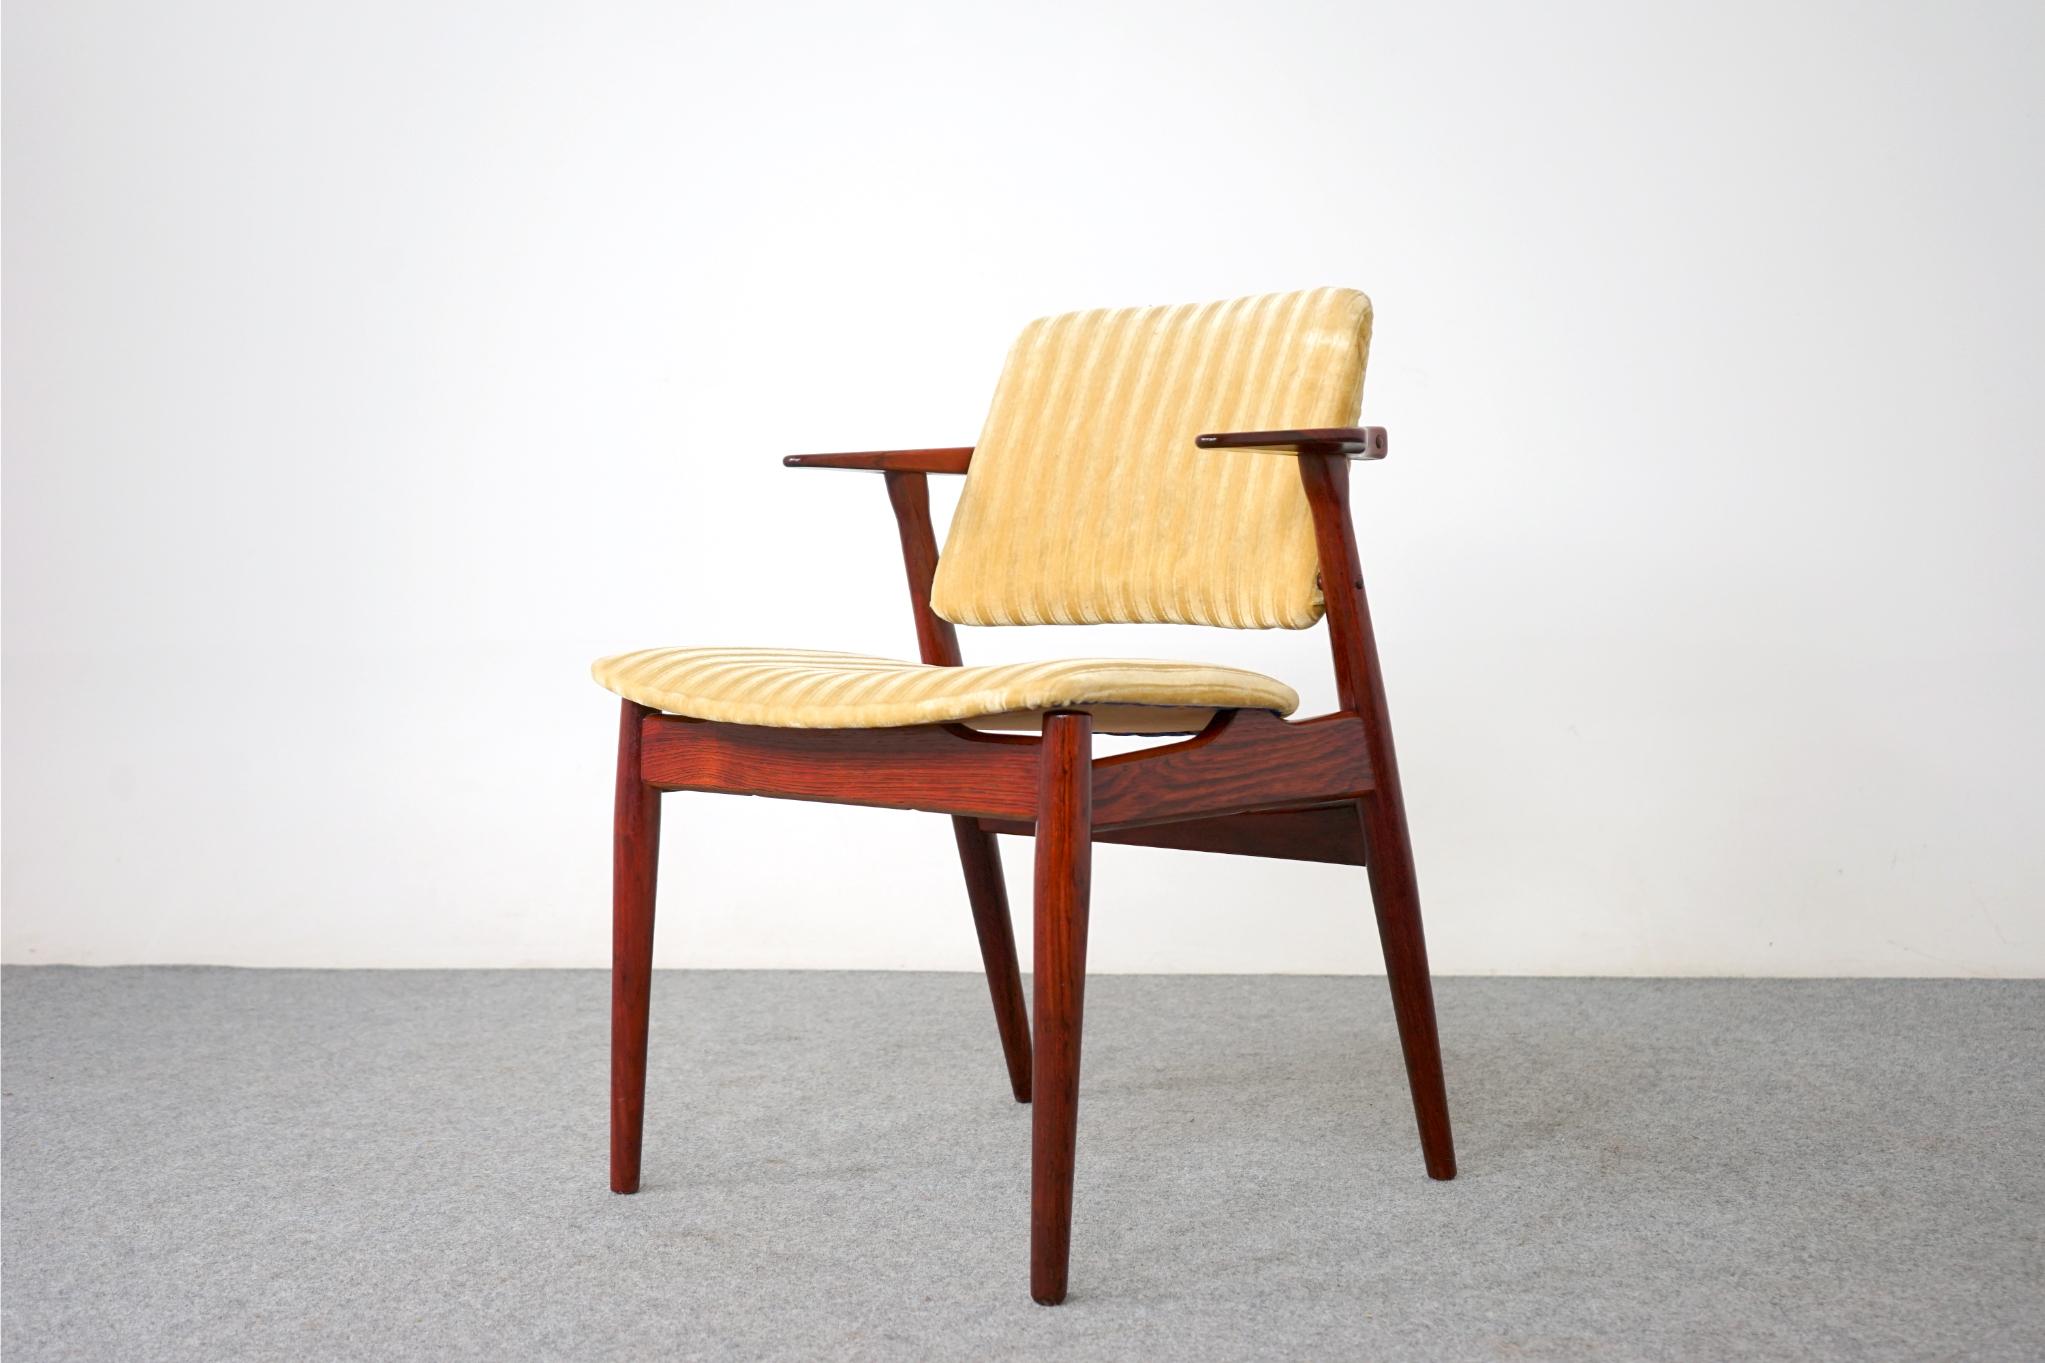 Dänischer Sessel aus Palisanderholz von Arne Vodder, ca. 1950er Jahre. Wunderschön geformter Rahmen mit atemberaubenden Linien, Komfort ohne großen Platzbedarf! Der schwebende Sitz und die Rückenlehne bieten ein leichtes, elegantes Gefühl.